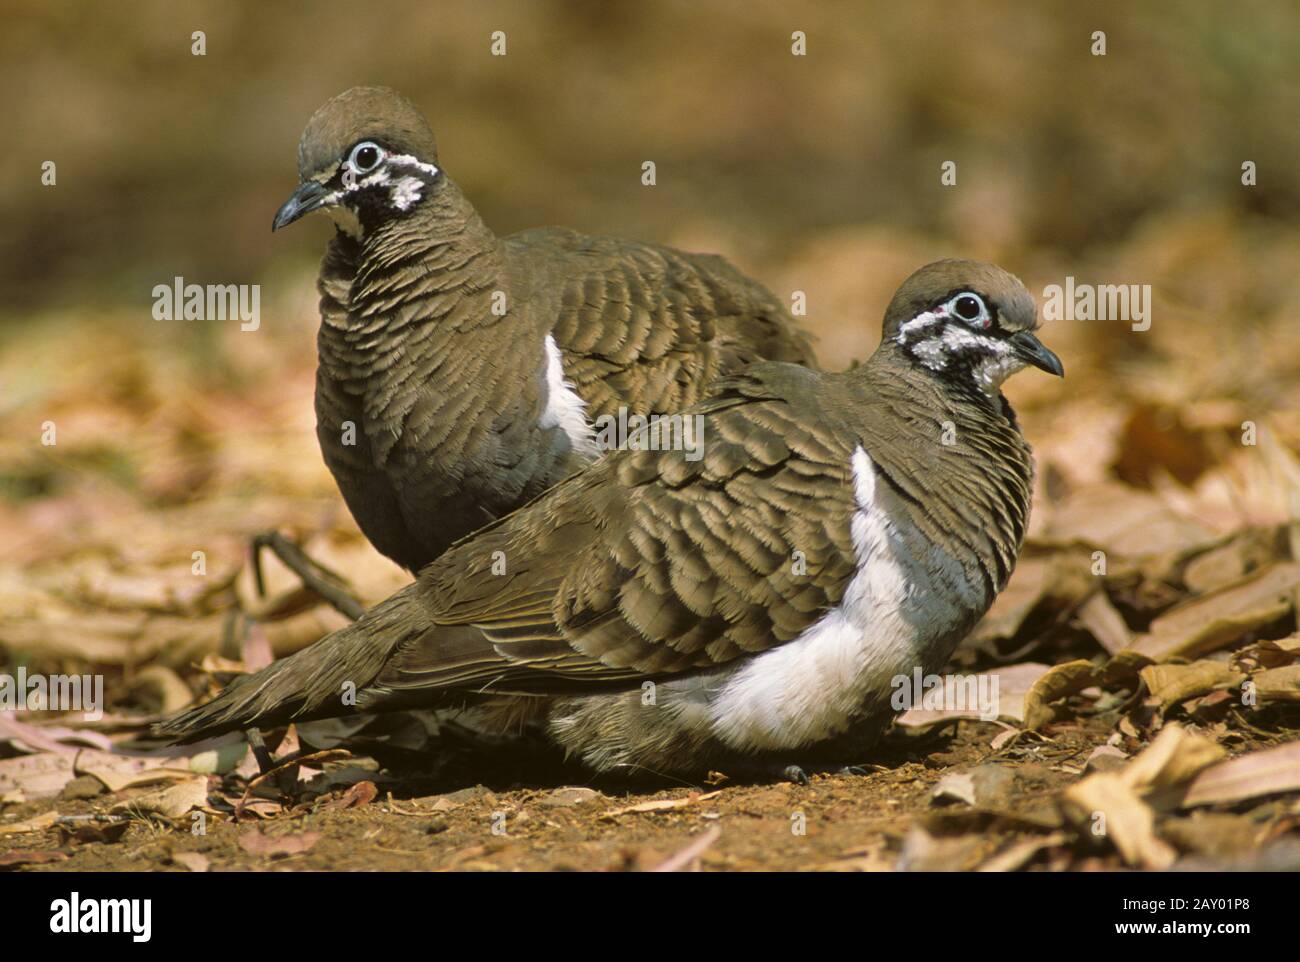 buchstabentaube, geophaps scripta, squatter pigeon, Northern Squatter-Pigeon, Partridge Bronzewing, Southern Squatter Pigeon, So Stock Photo